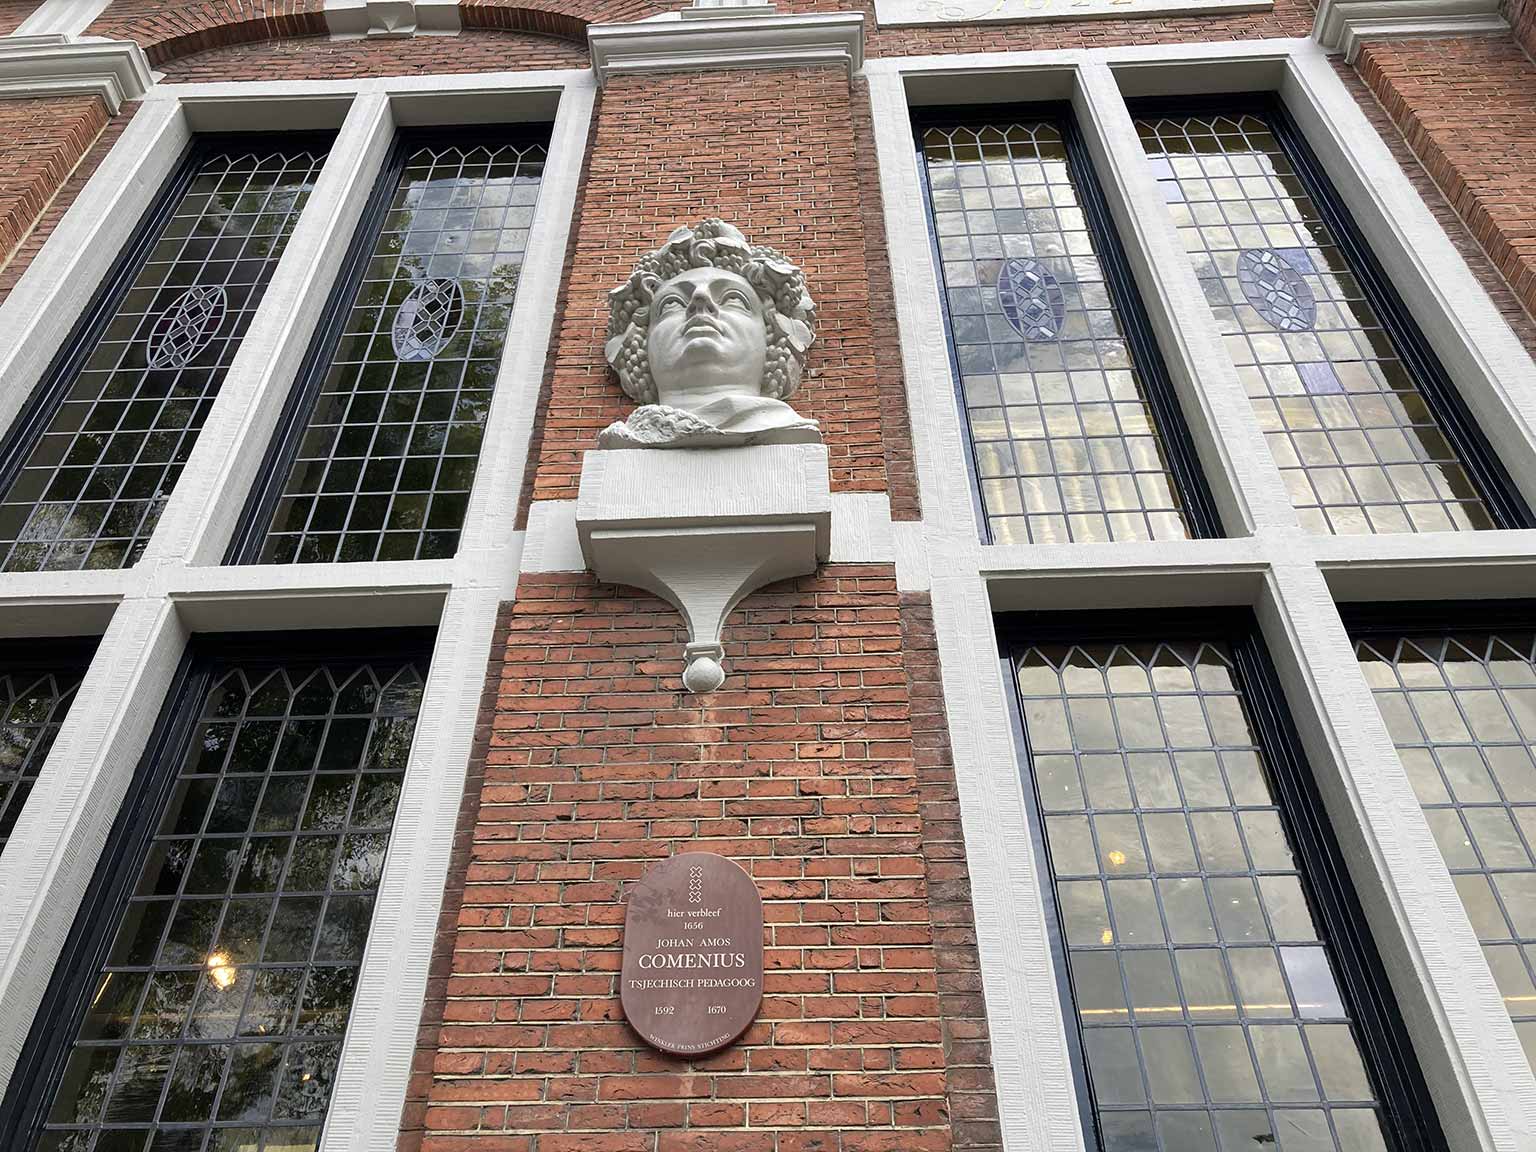 Plaquette die herinnert aan Comenius’ verblijf in het Huis met de Hoofden, Amsterdam